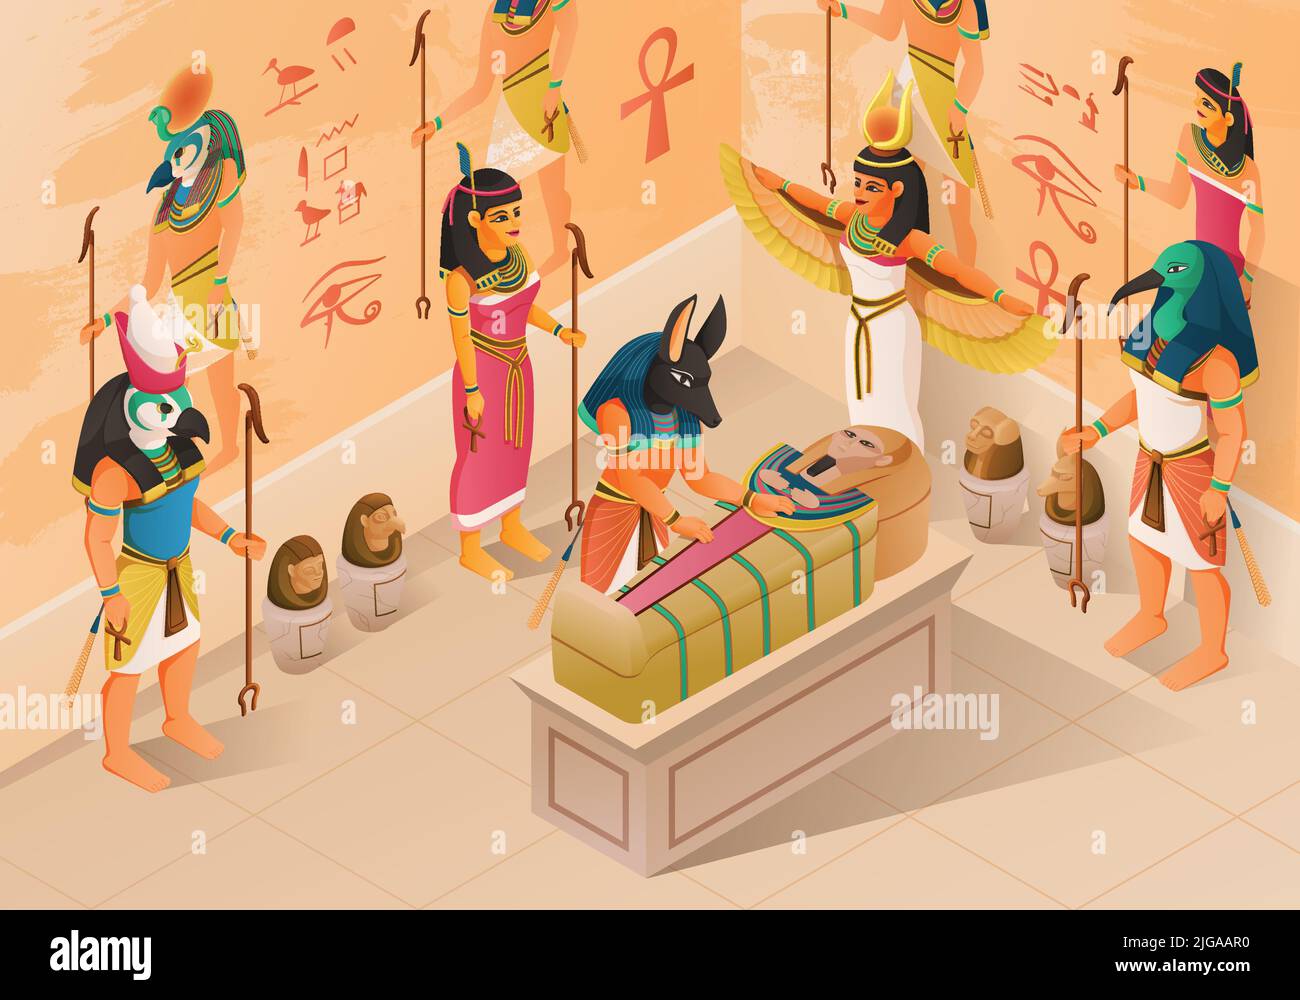 Ägyptische Mythologie isometrischen Hintergrund mit alten Göttern und Menschen präsentieren bei Mumification Zeremonie des pharao Sarkophag Vektor-Illustration Stock Vektor